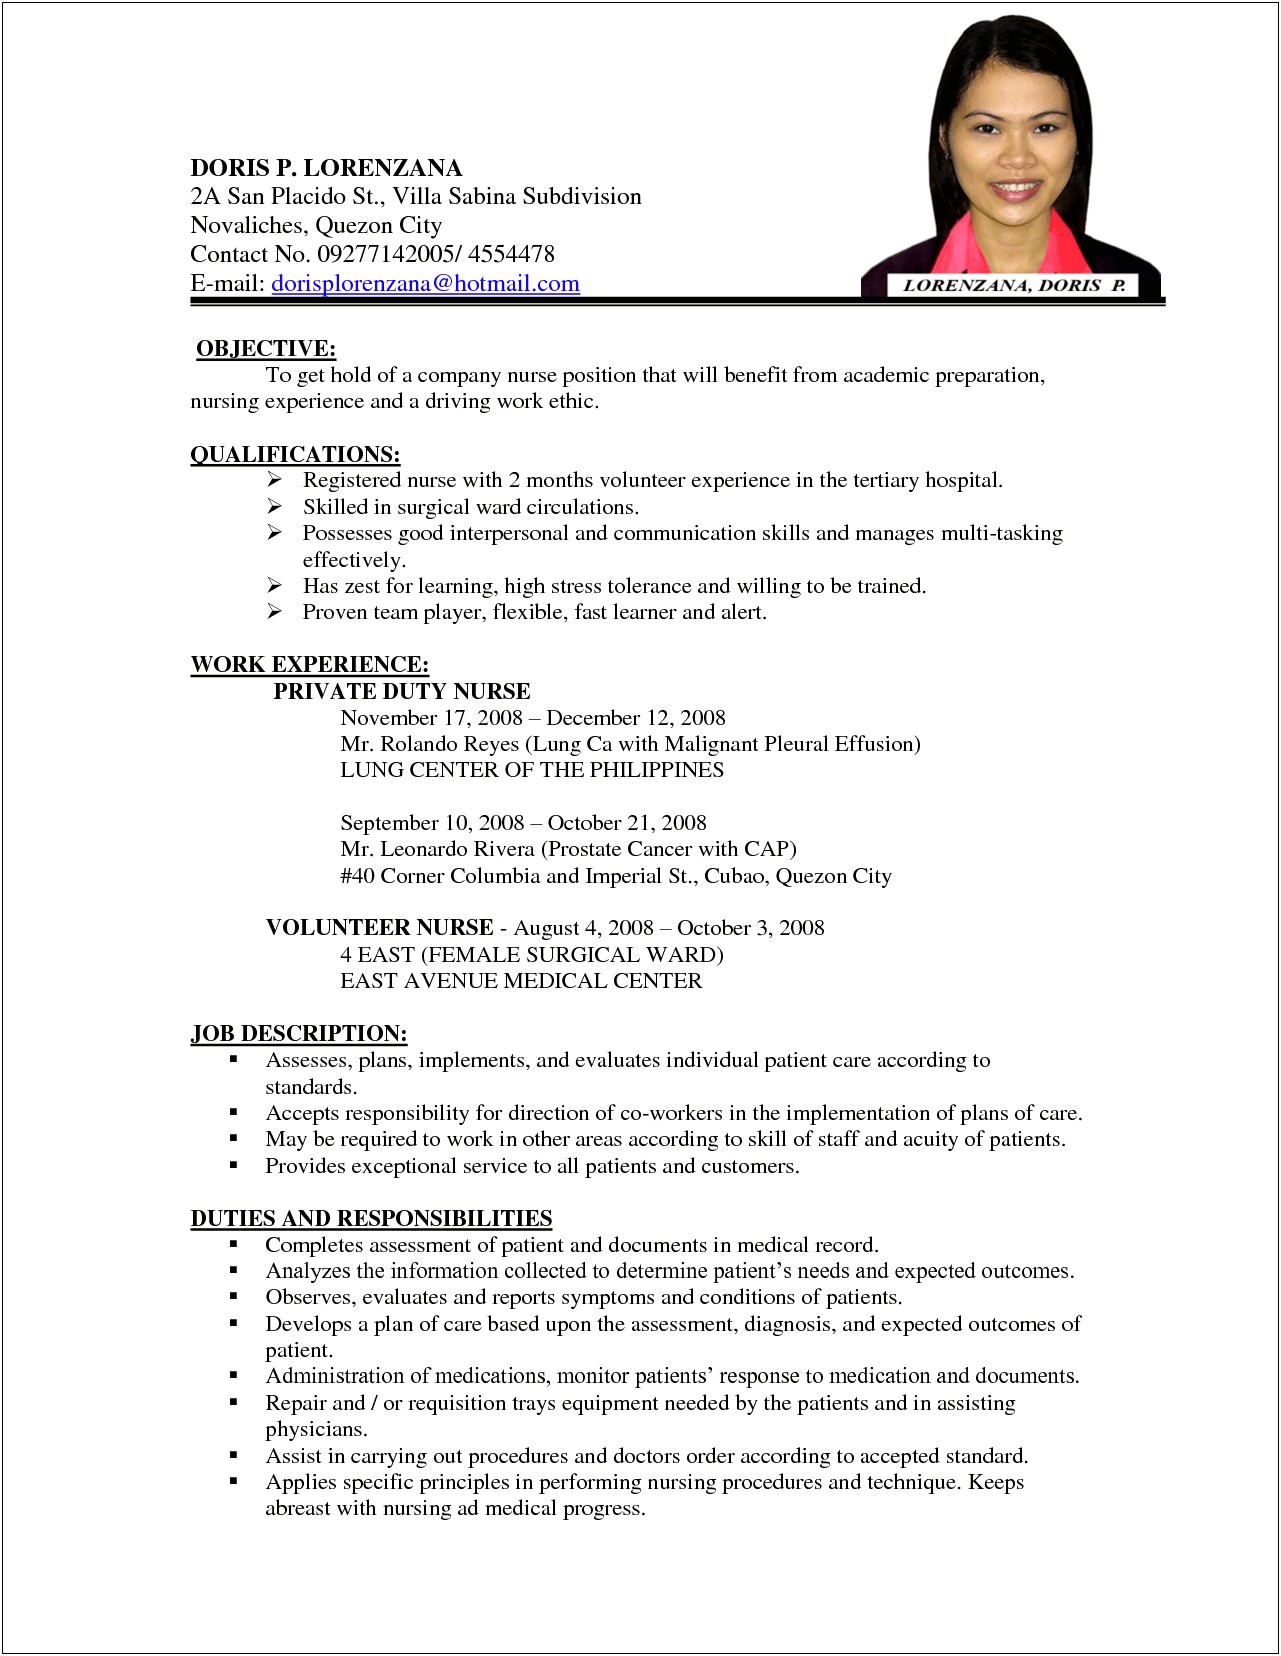 Sample Resume For Registered Nurse Position